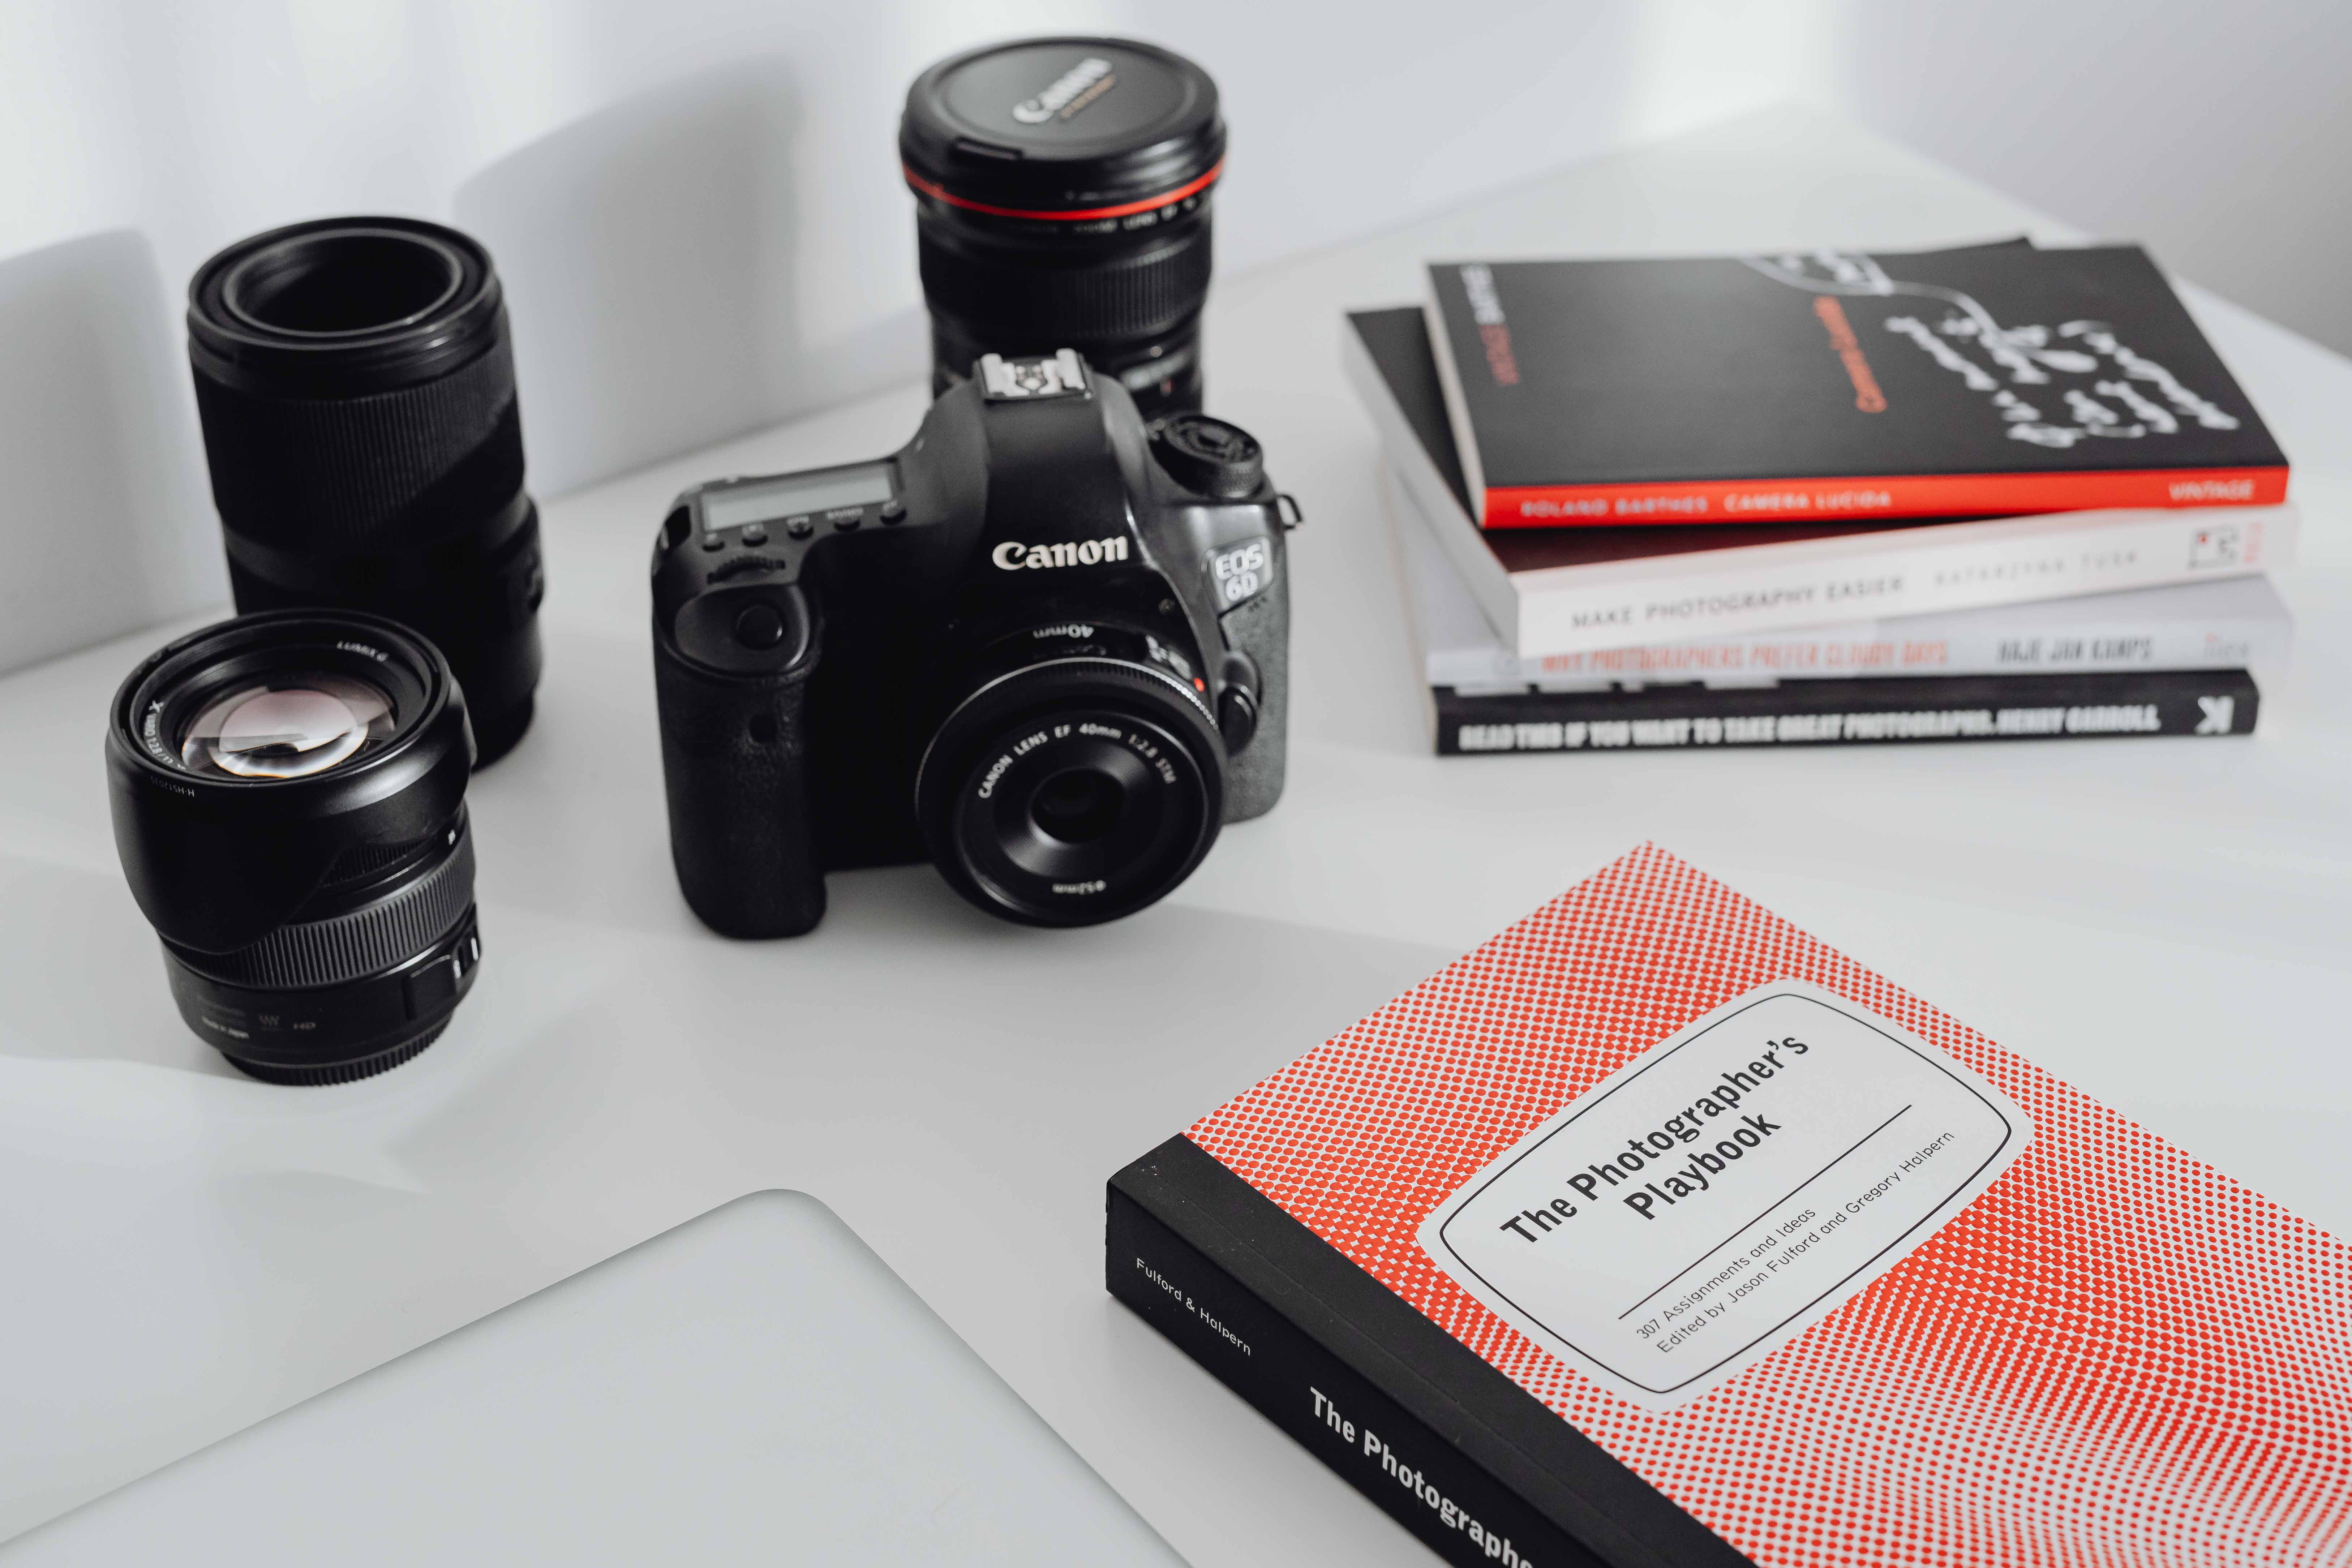 Photographer's desk - books, DSLR camera and lenses